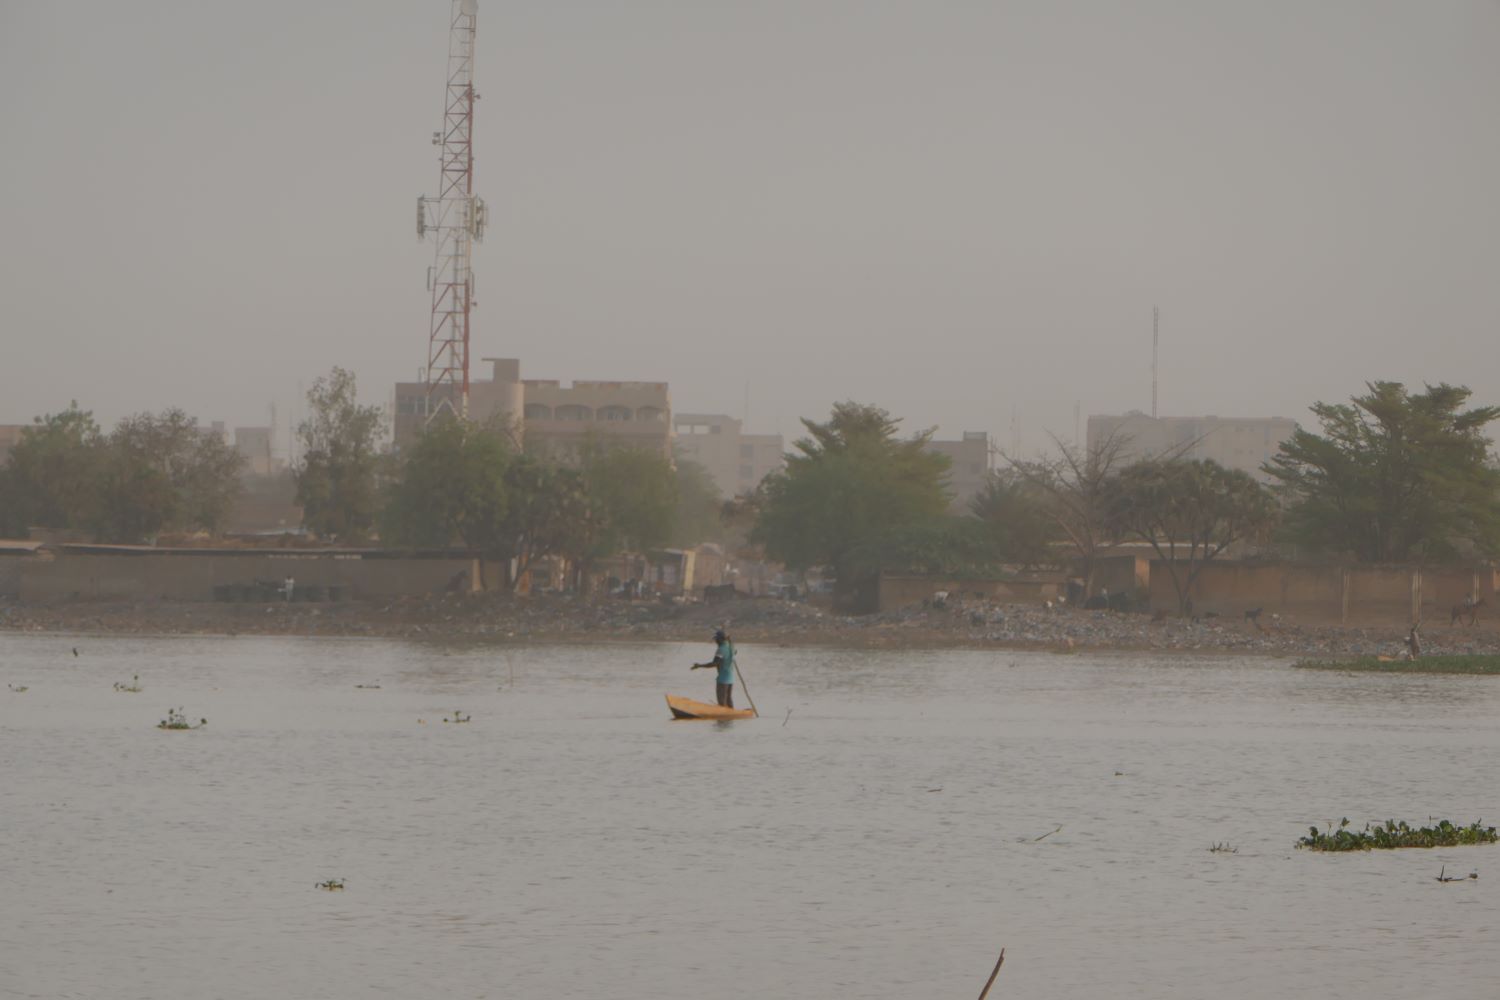 Un pêcheur est en train de récupérer ses filets de pêche sur le barrage nº 2 de Ouagadougou © Globe Reporters